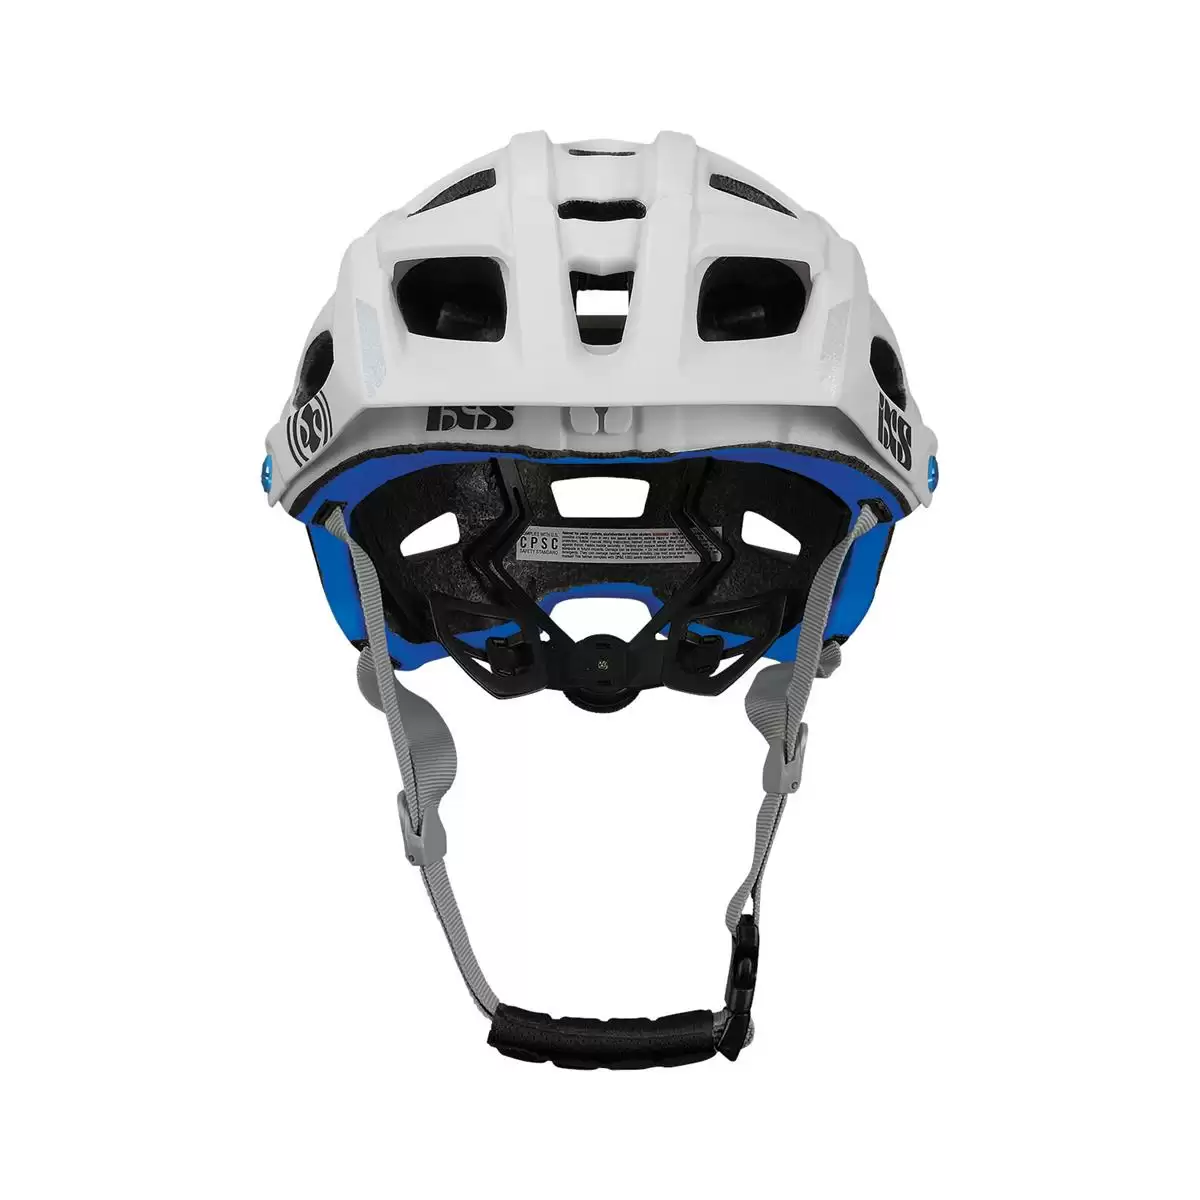 Henduro Helmet Trail Evo E-Bike Edition White Size XS/S (49-54cm) #1